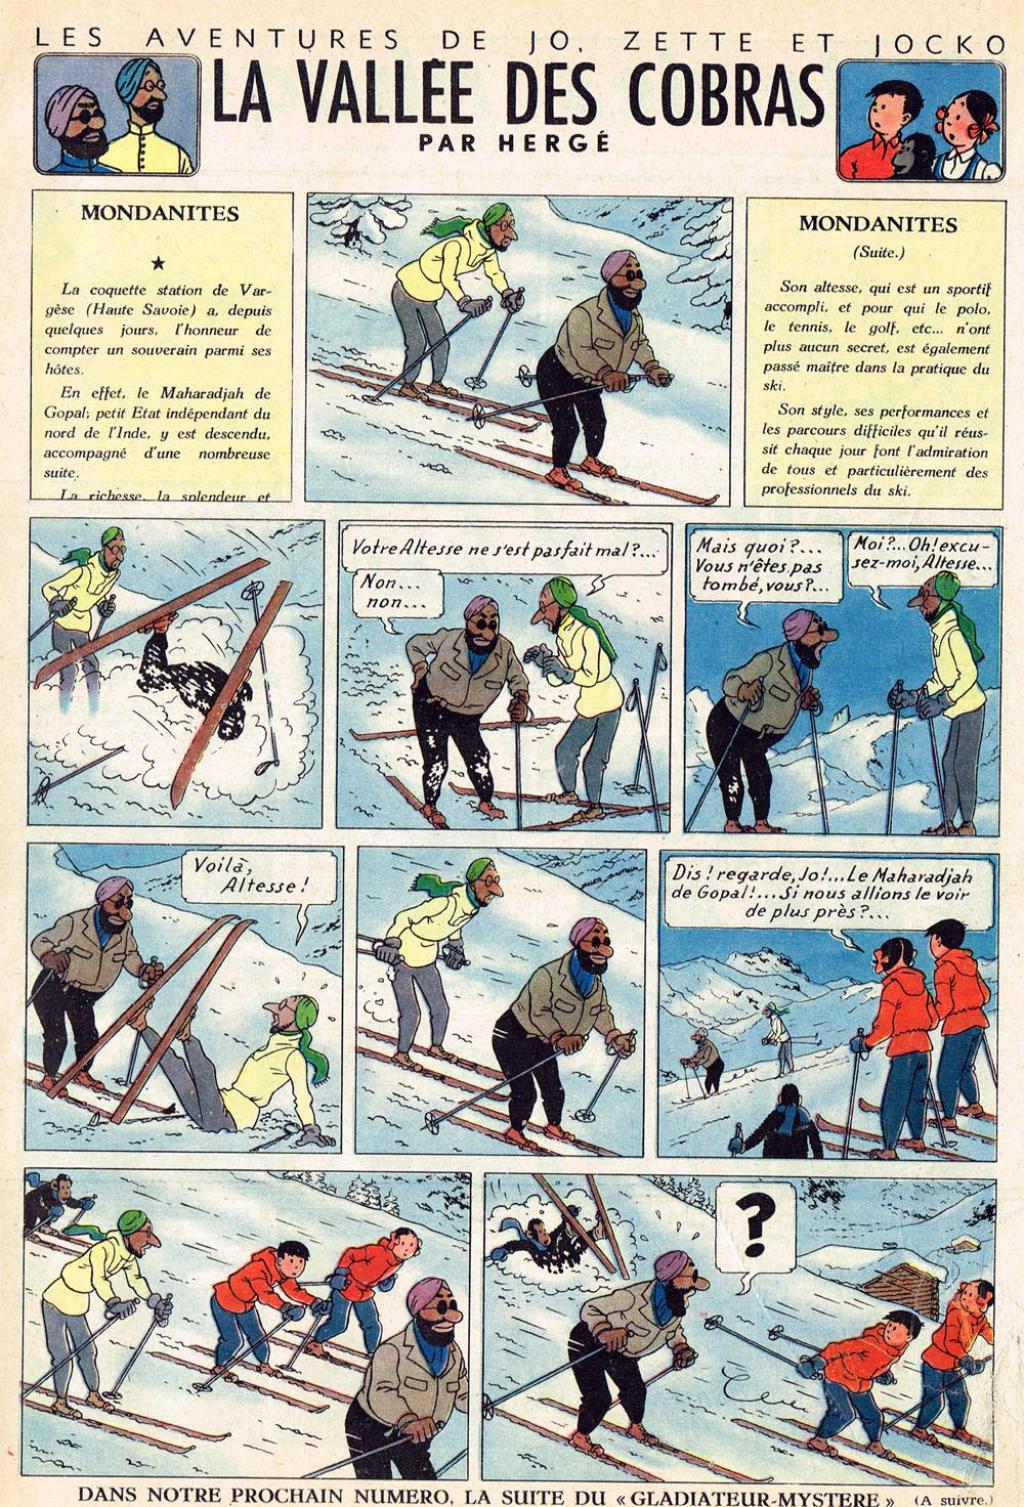 Jo, Zette et Jocko et autre travaux d'Hergé - Page 2 Page1710